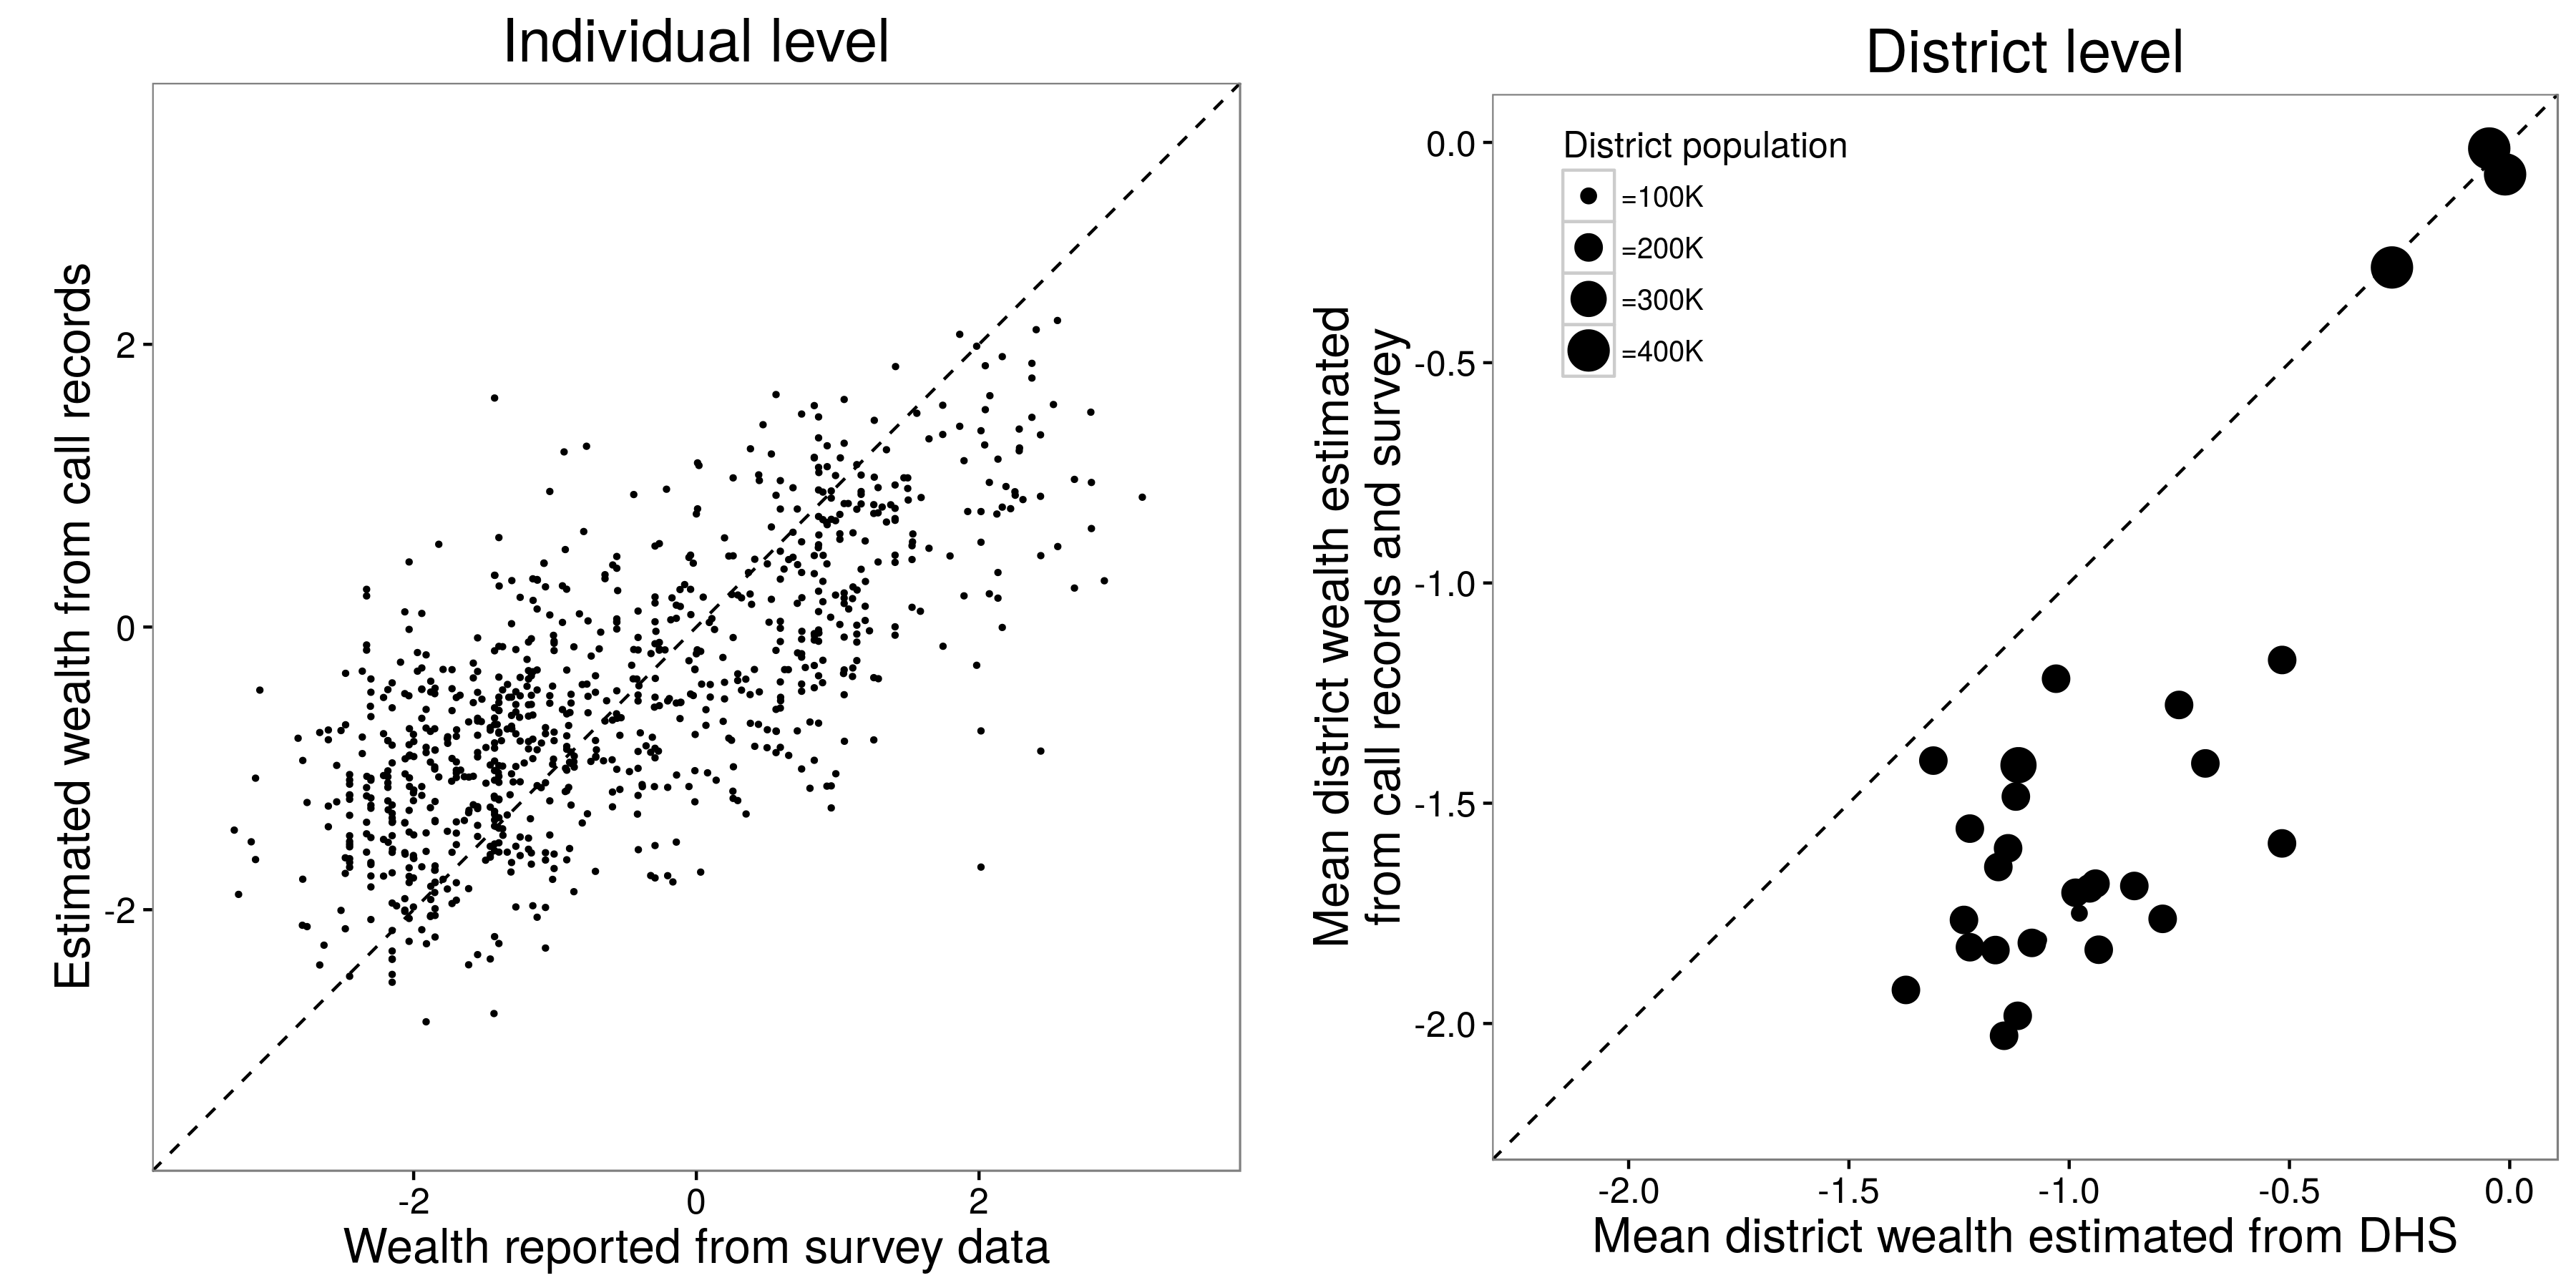 Obrázok 3.17: Výsledky z Blumenstock, Cadamuro a On (2015). Na individuálnej úrovni boli vedci schopní robiť rozumnú prácu pri predpovedaní bohatstva niekoho z ich záznamov o volaniach. Odhady bohatstva na úrovni okresu pre 30 okresov v Rwande, ktoré boli založené na odhadoch na úrovni jednotlivca o bohatstve a mieste bydliska, boli podobné výsledkom demografického a zdravotného prieskumu, ktorý je tradičným zlatým prieskumom. Úprava z Blumenstock, Cadamuro a On (2015), obrázky 1a a 3c.